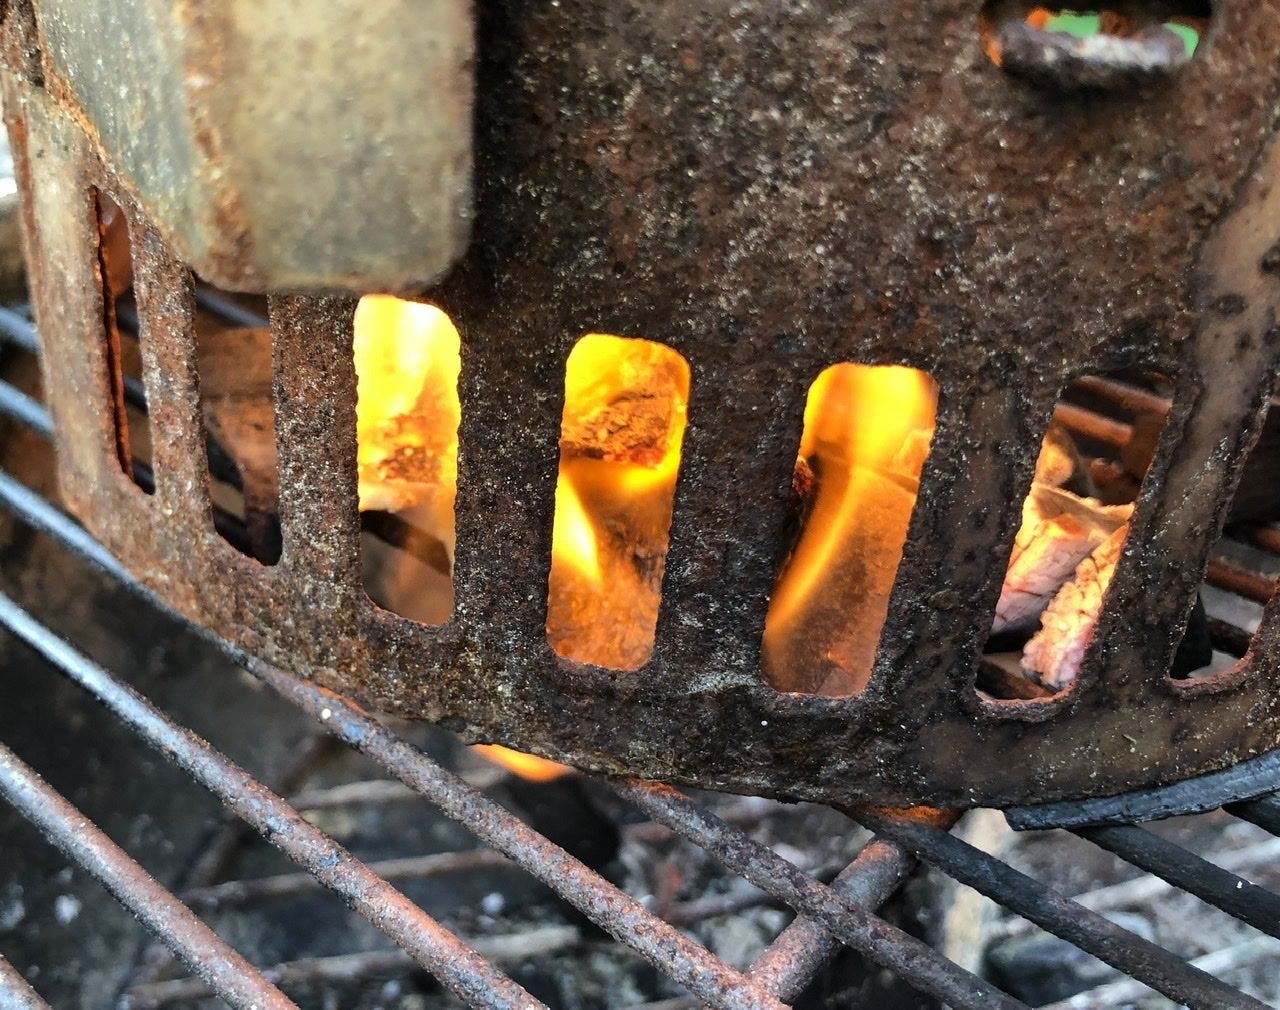 Birch Bark Fire Starter - Why Is It So Flammable?